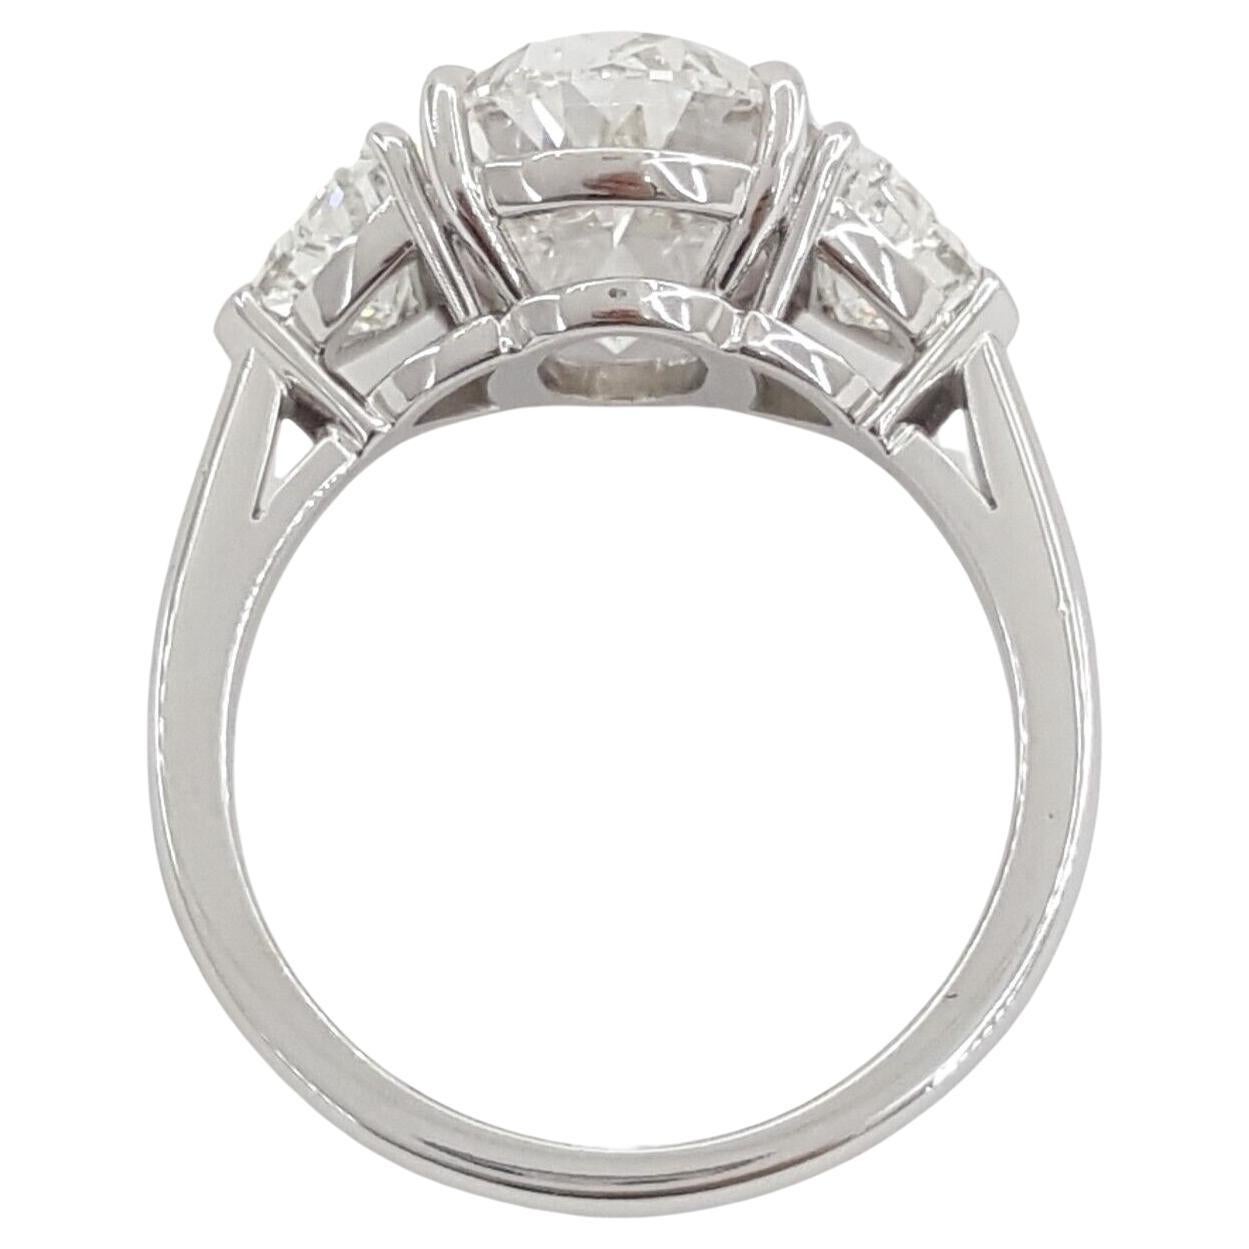  GIA-zertifizierter 6-Karat-Diamant im Ovalschliff, ein Beweis für zeitlose Schönheit und unvergleichliche Handwerkskunst. Dieser außergewöhnliche Ring ist in massivem Platin gefasst und ein Leuchtfeuer von Luxus und Raffinesse.

Dieser Diamant